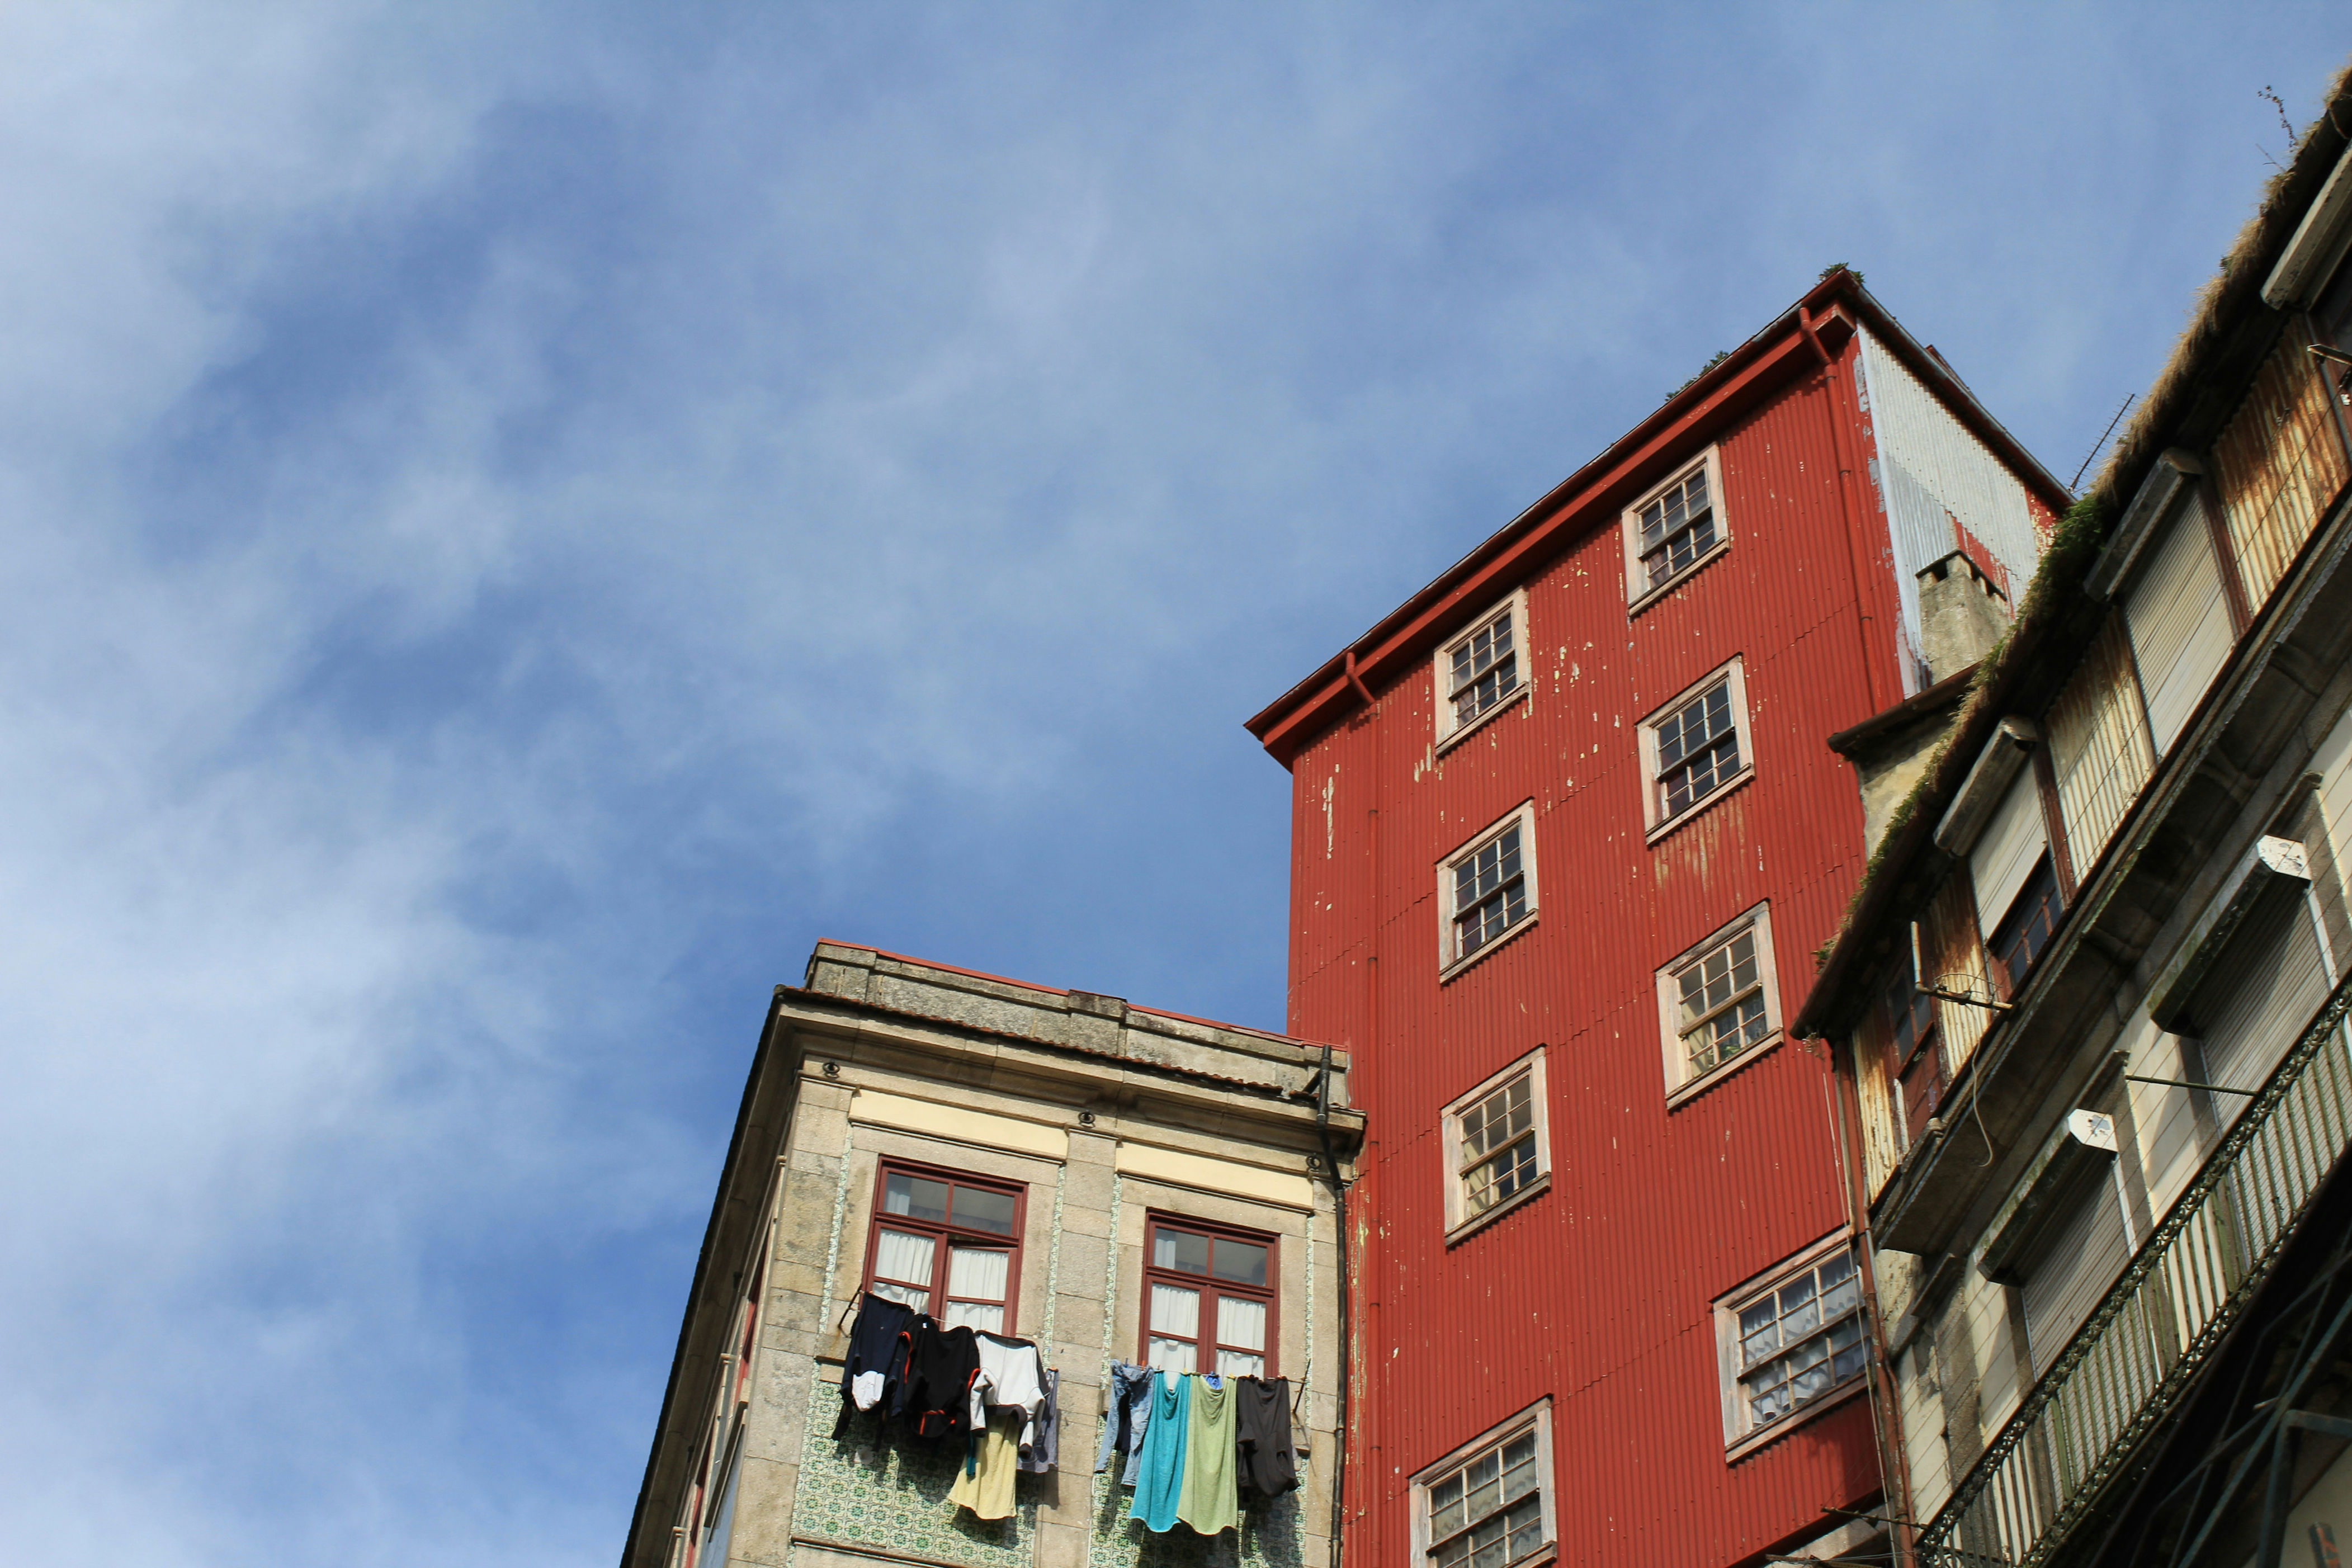 preços das casas em portugal “continuam sobrevalorizados”, diz bruxelas